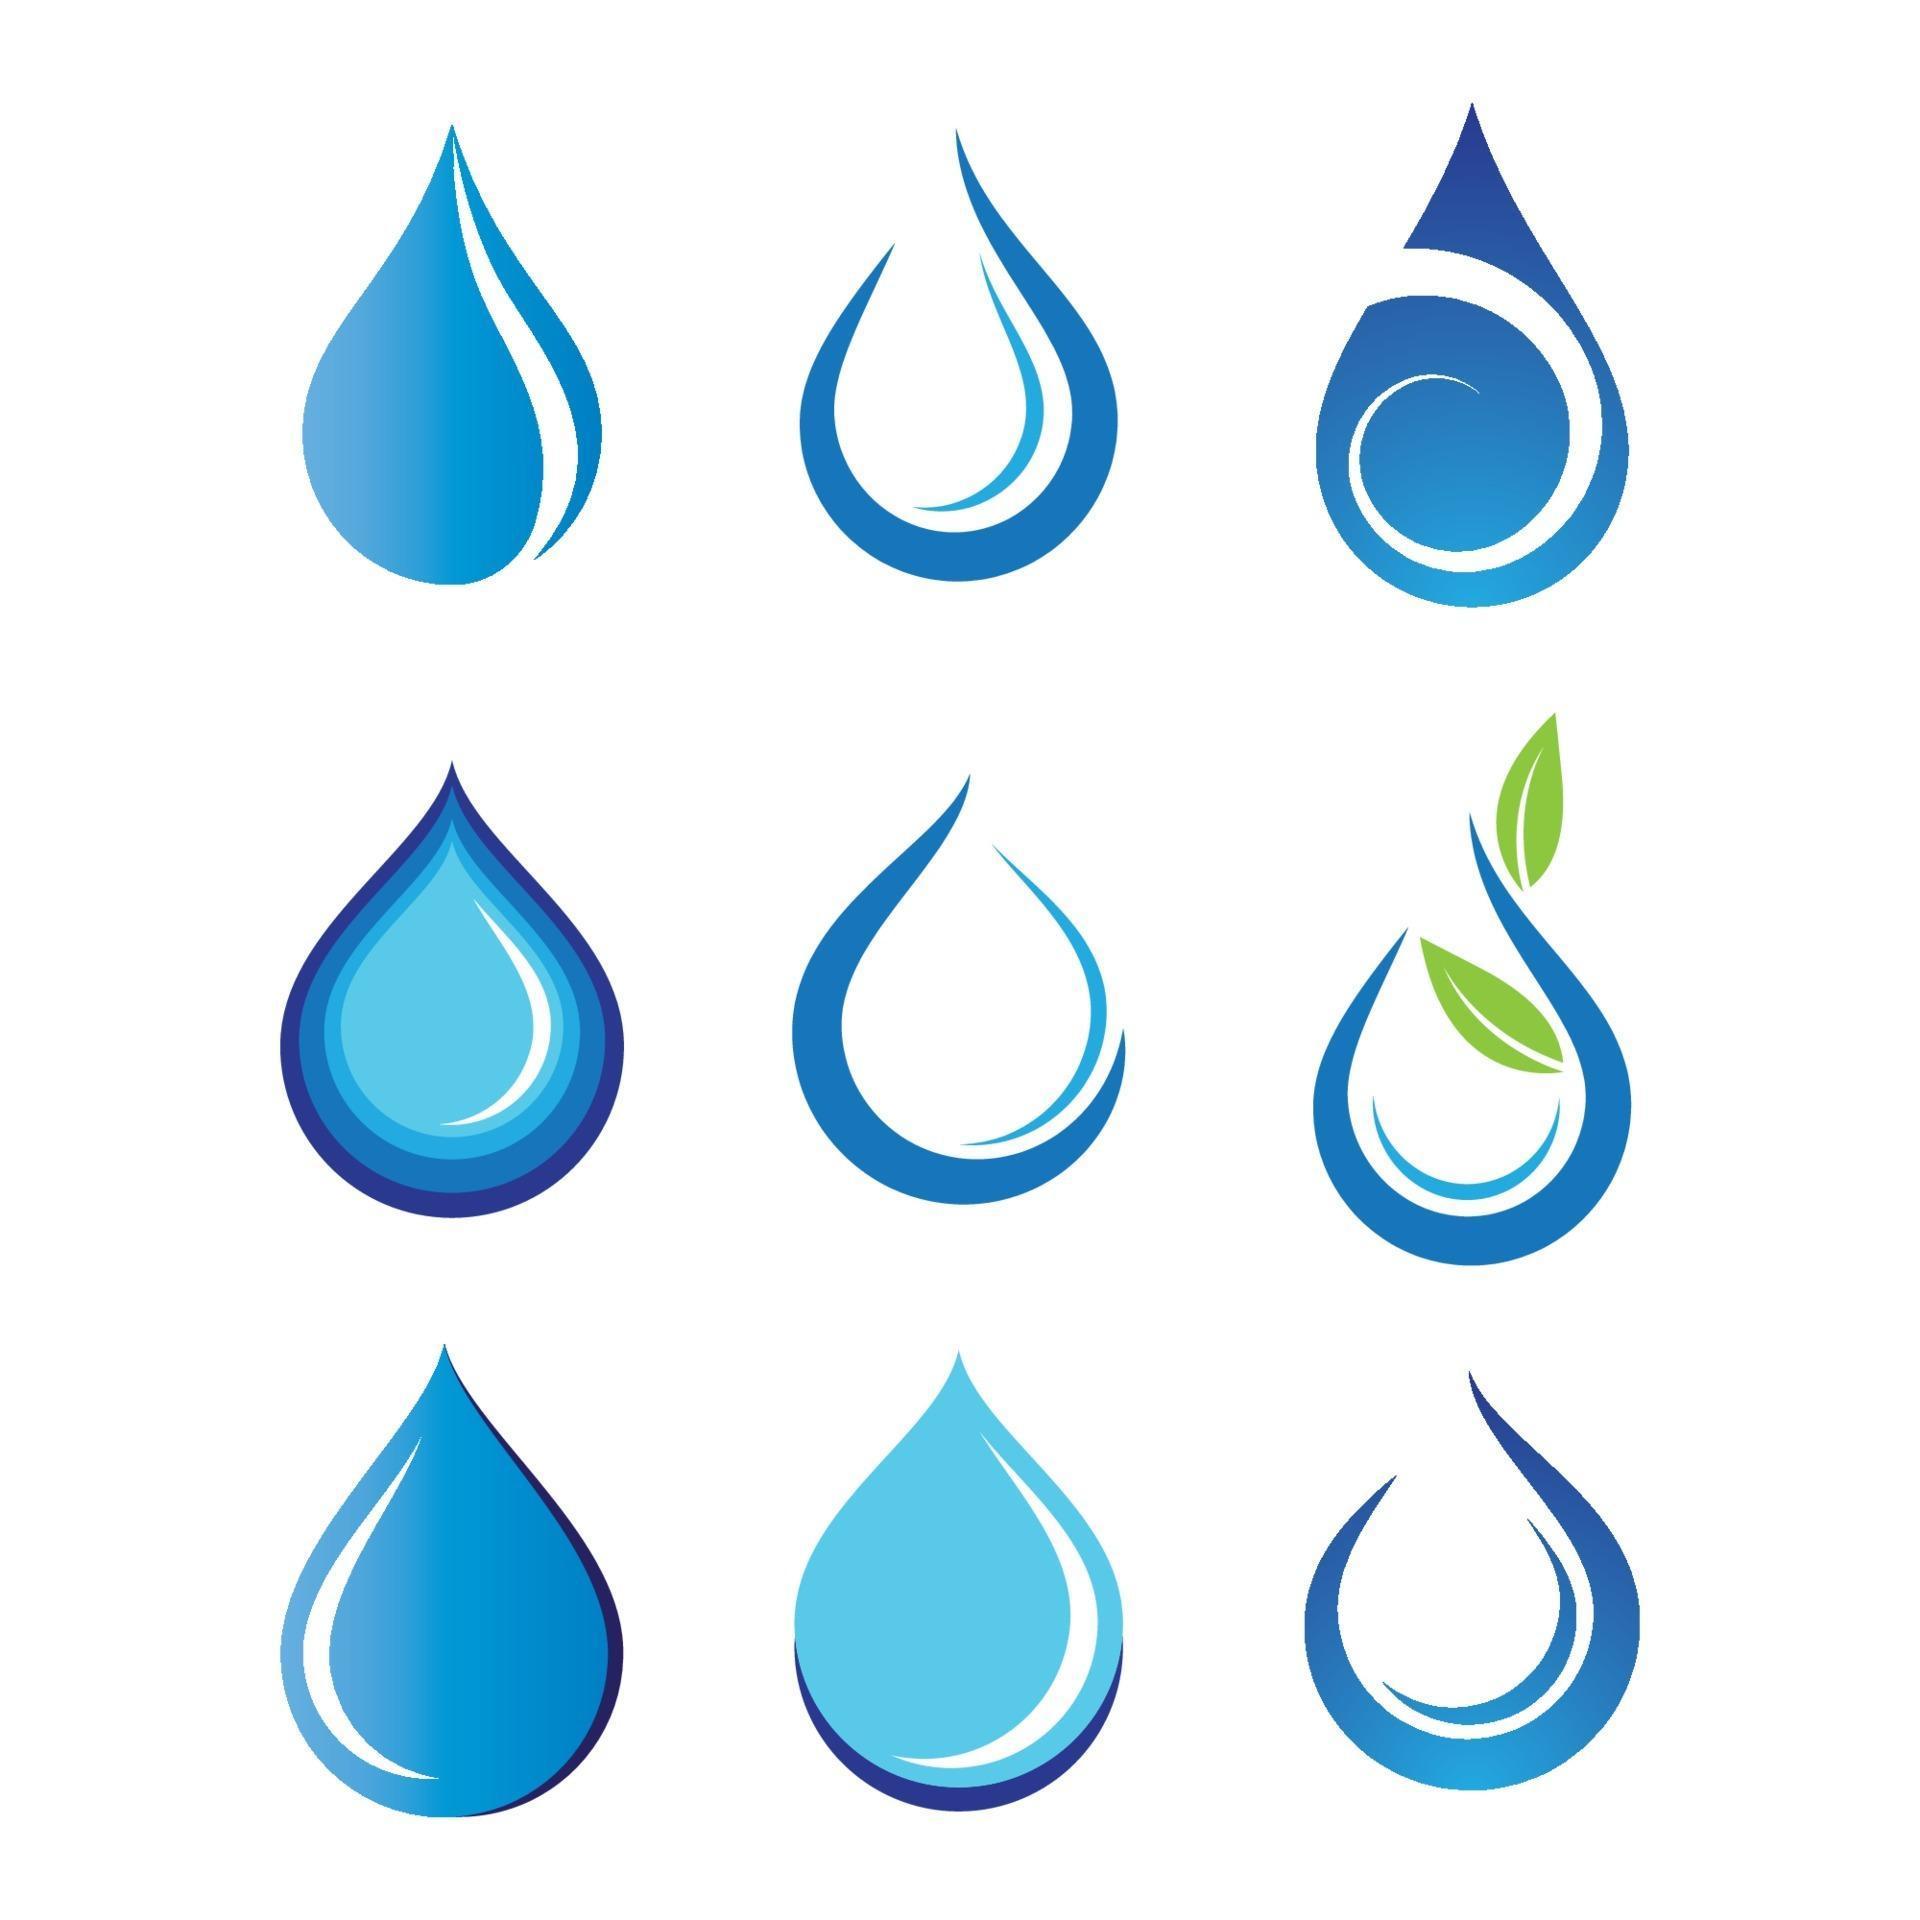 Water drop logo images 3067263 Vector Art at Vecteezy